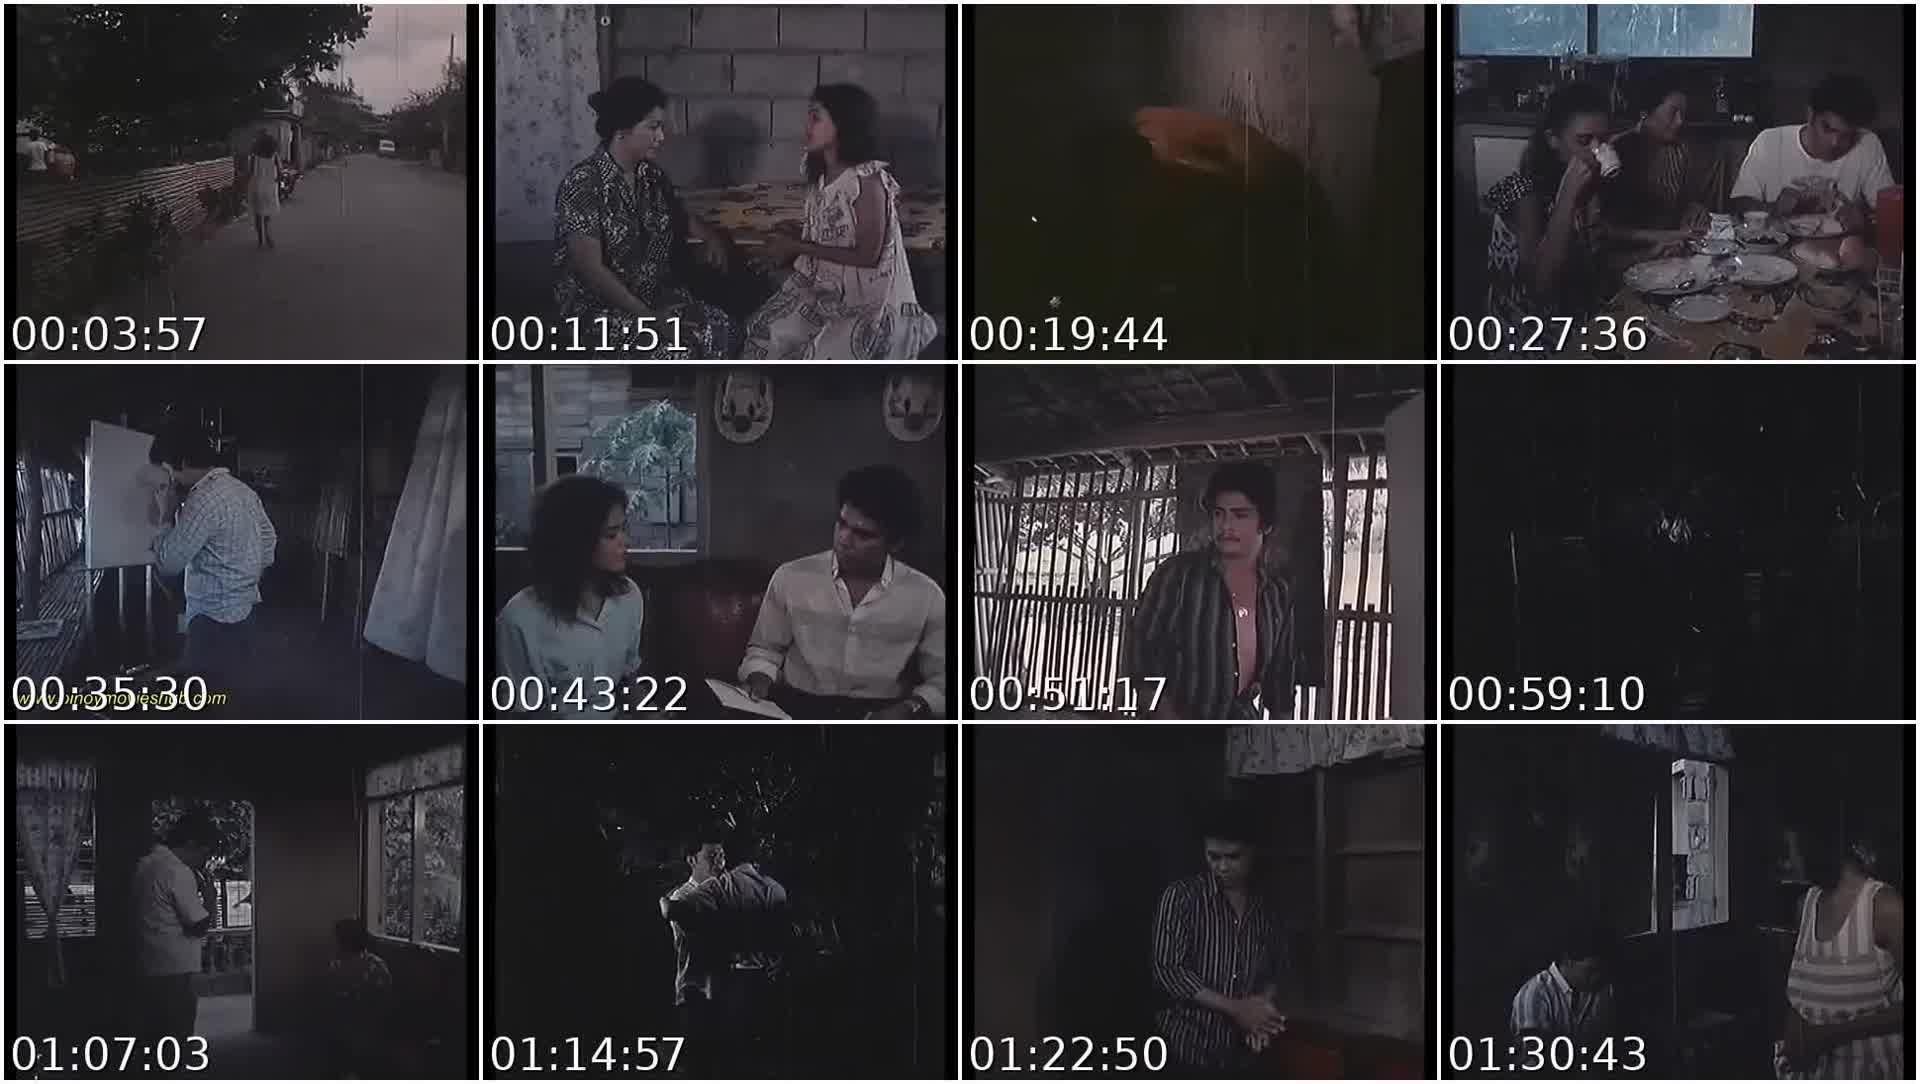 Kulang sa dilig 1986 full movie